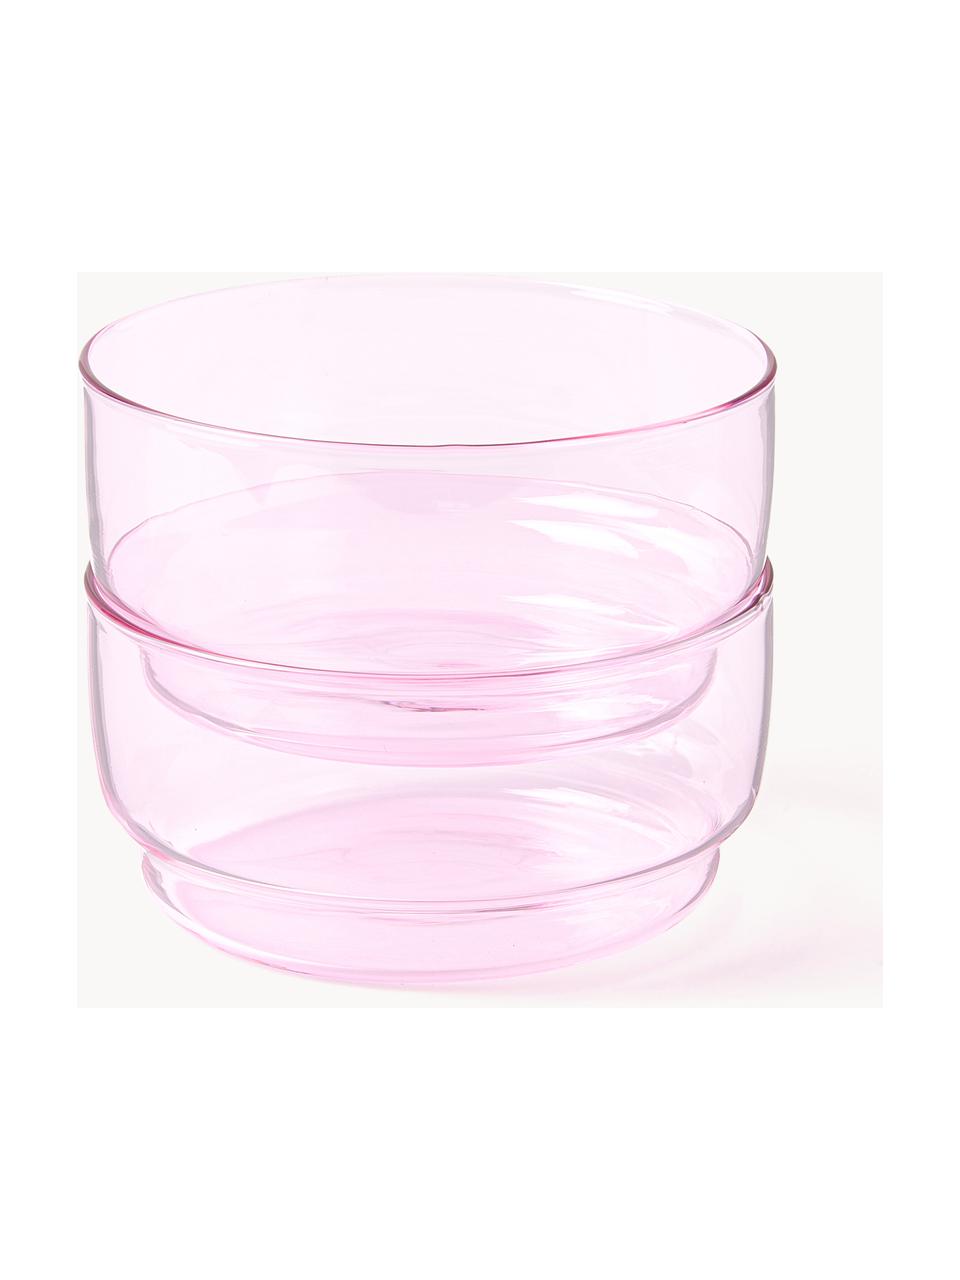 Misky z borosilikátového skla Torino, 2 ks, Borosilikátové sklo

Objavte všestrannosť borosilikátového skla pre váš domov! Borosilikátové sklo je kvalitný, spoľahlivý a robustný materiál. Vyznačuje sa mimoriadnou tepelnou odolnosťou a preto je ideálny pre váš horúci čaj alebo kávu. V porovnaní s klasickým sklom je borosilikátové sklo odolnejšie voči rozbitiu a prasknutiu, a preto je bezpečným spoločníkom vo vašej domácnosti., Svetloružová, priehľadná, Ø 12 x V 6 cm